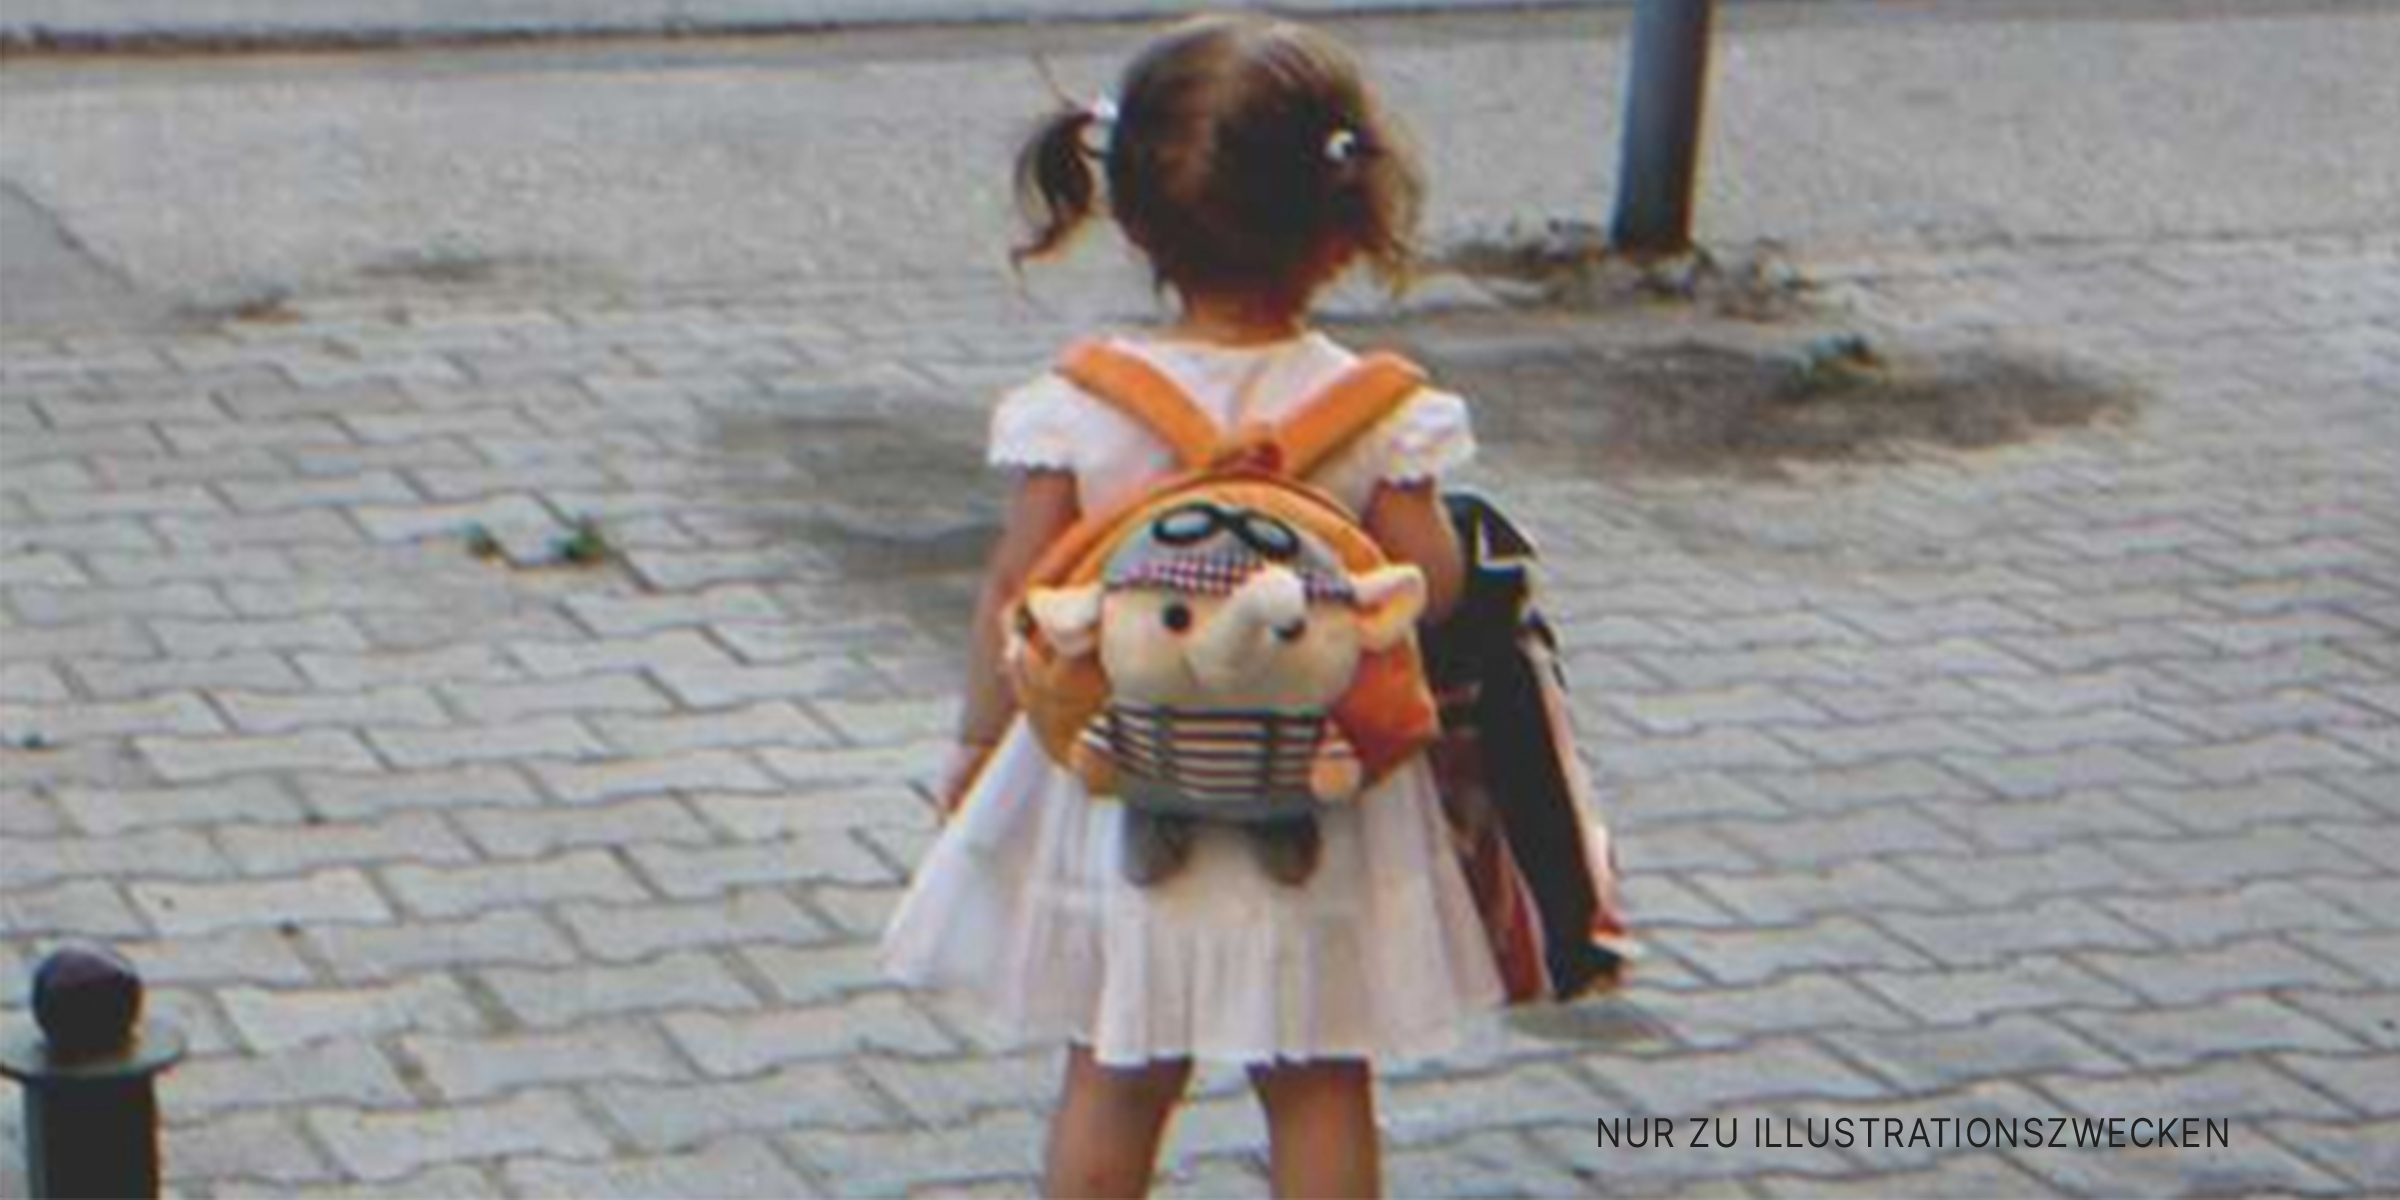 Ein kleines Mädchen auf der Straße | Quelle: Shutterstock